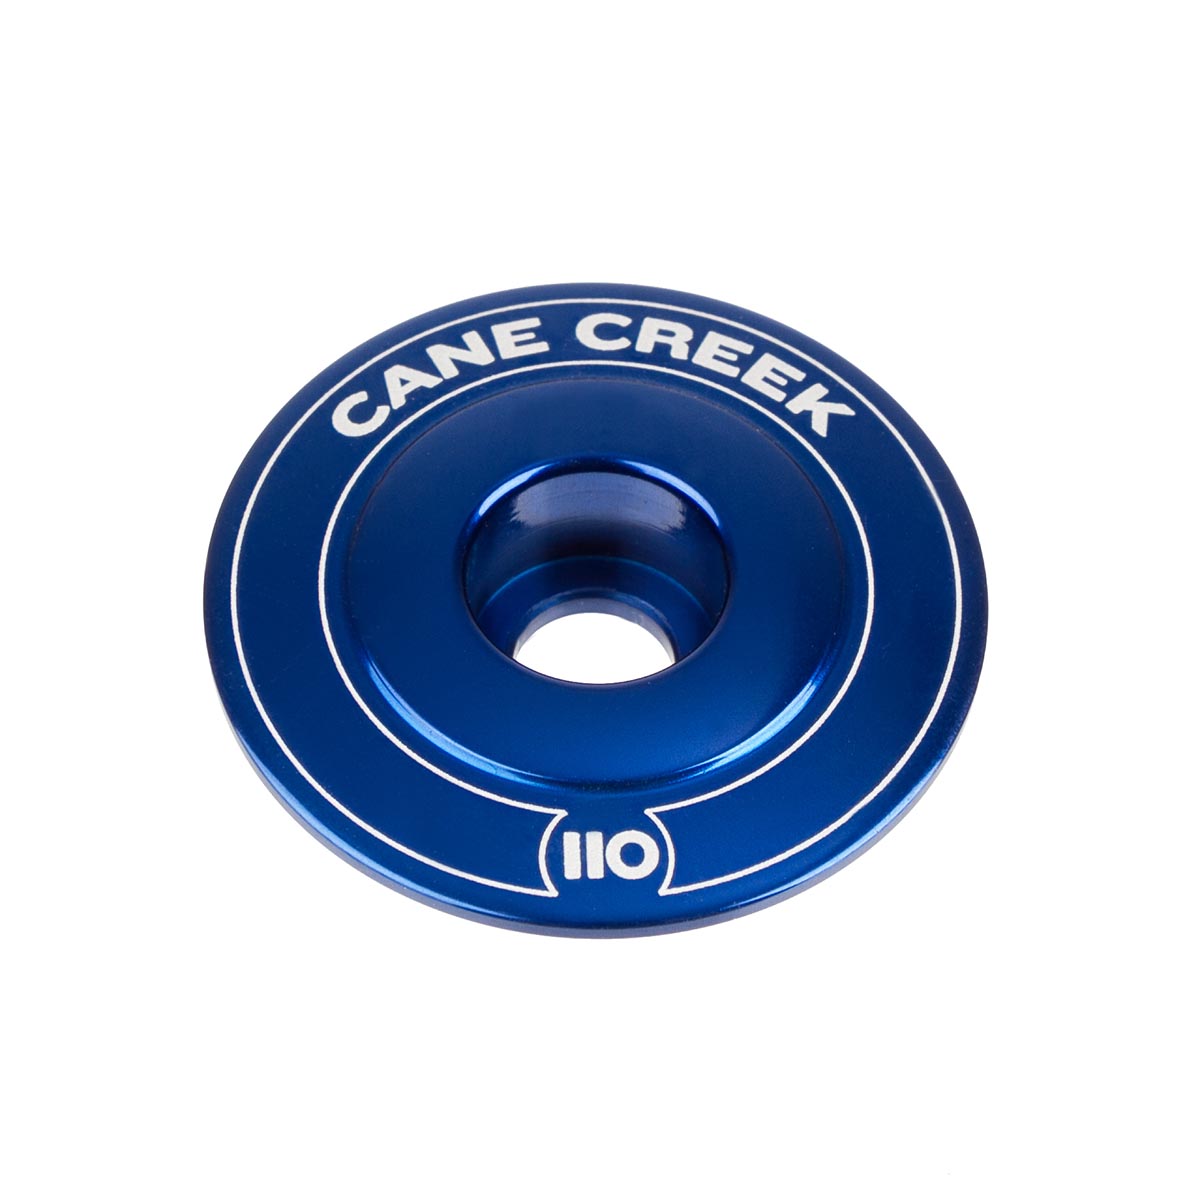 Cane Creek Tappo Serie Sterzo 110 Blu, Alluminio, 1 1/8 Pollici